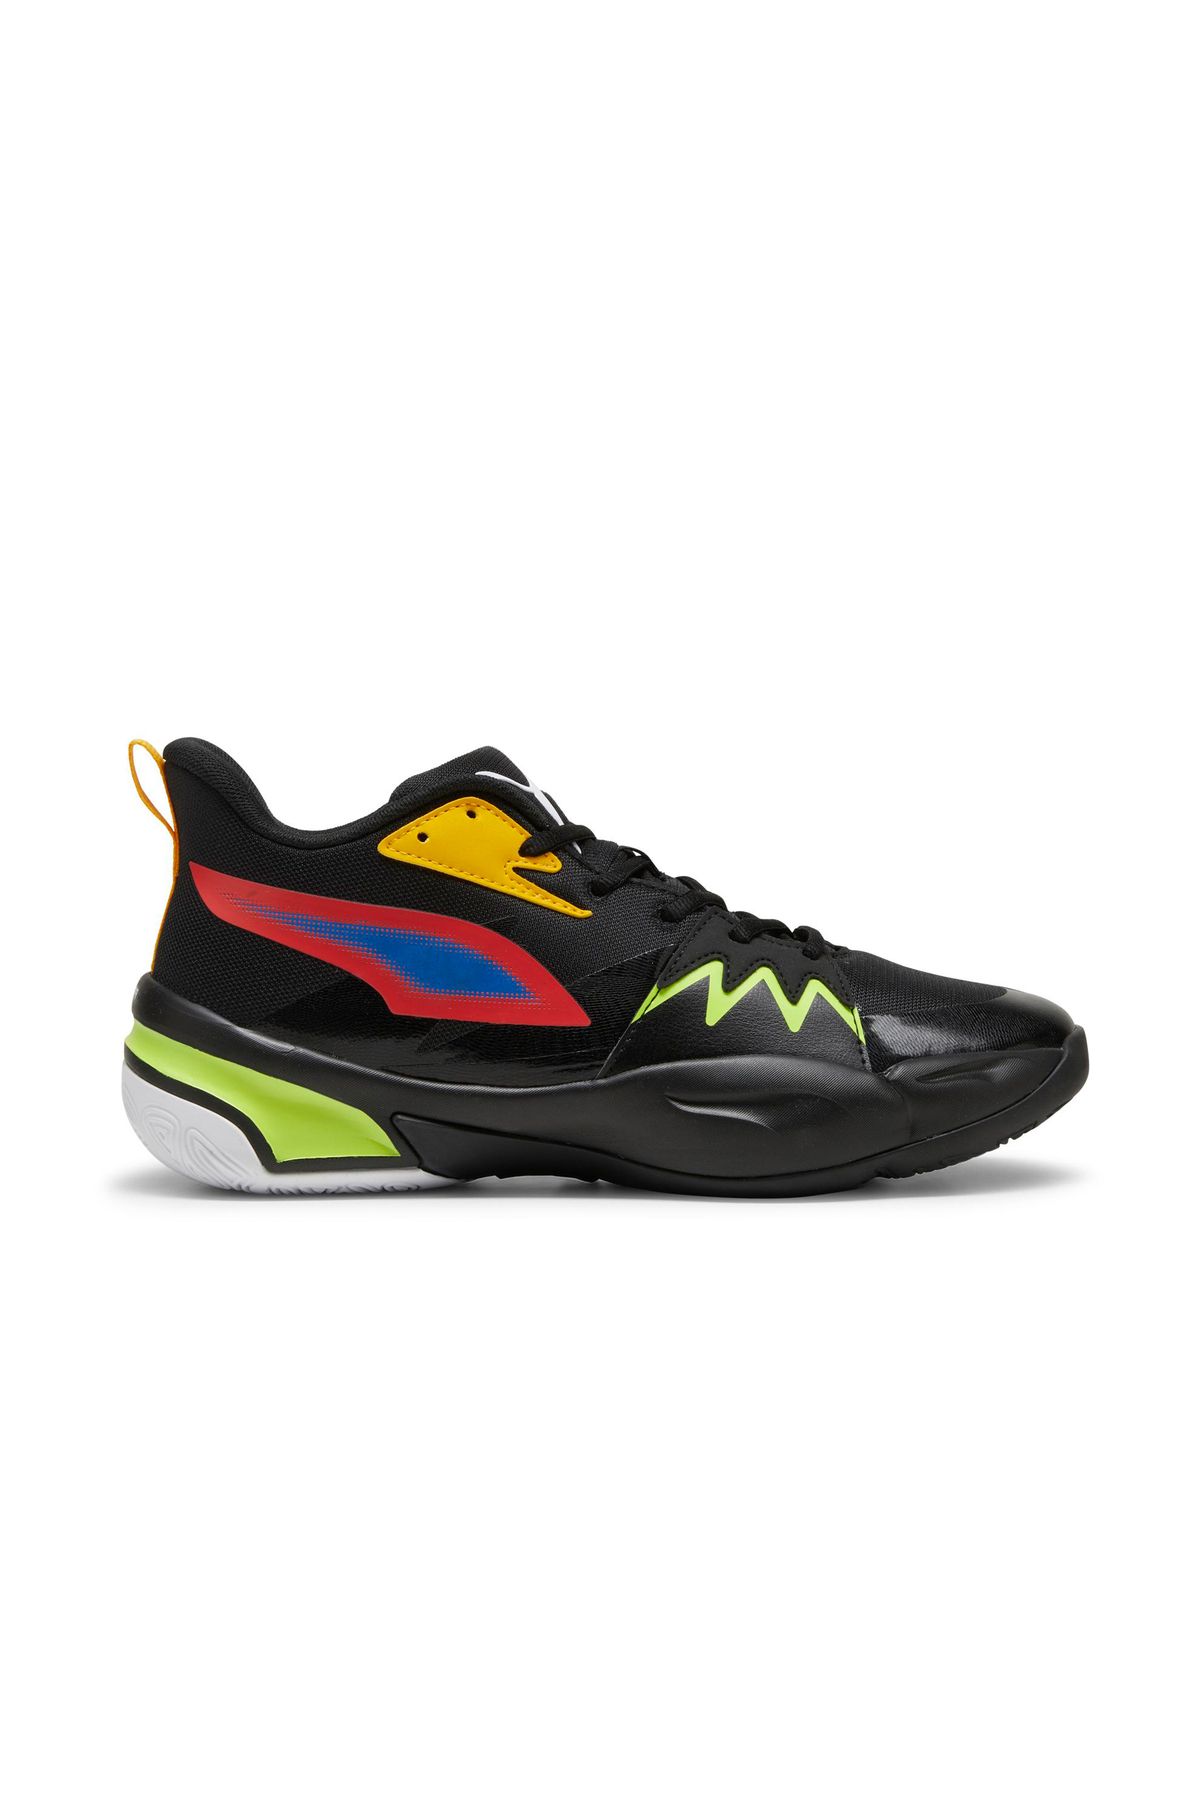 Puma Genetics Unisex Bilekli Basketbol Ayakkabısı Renkli